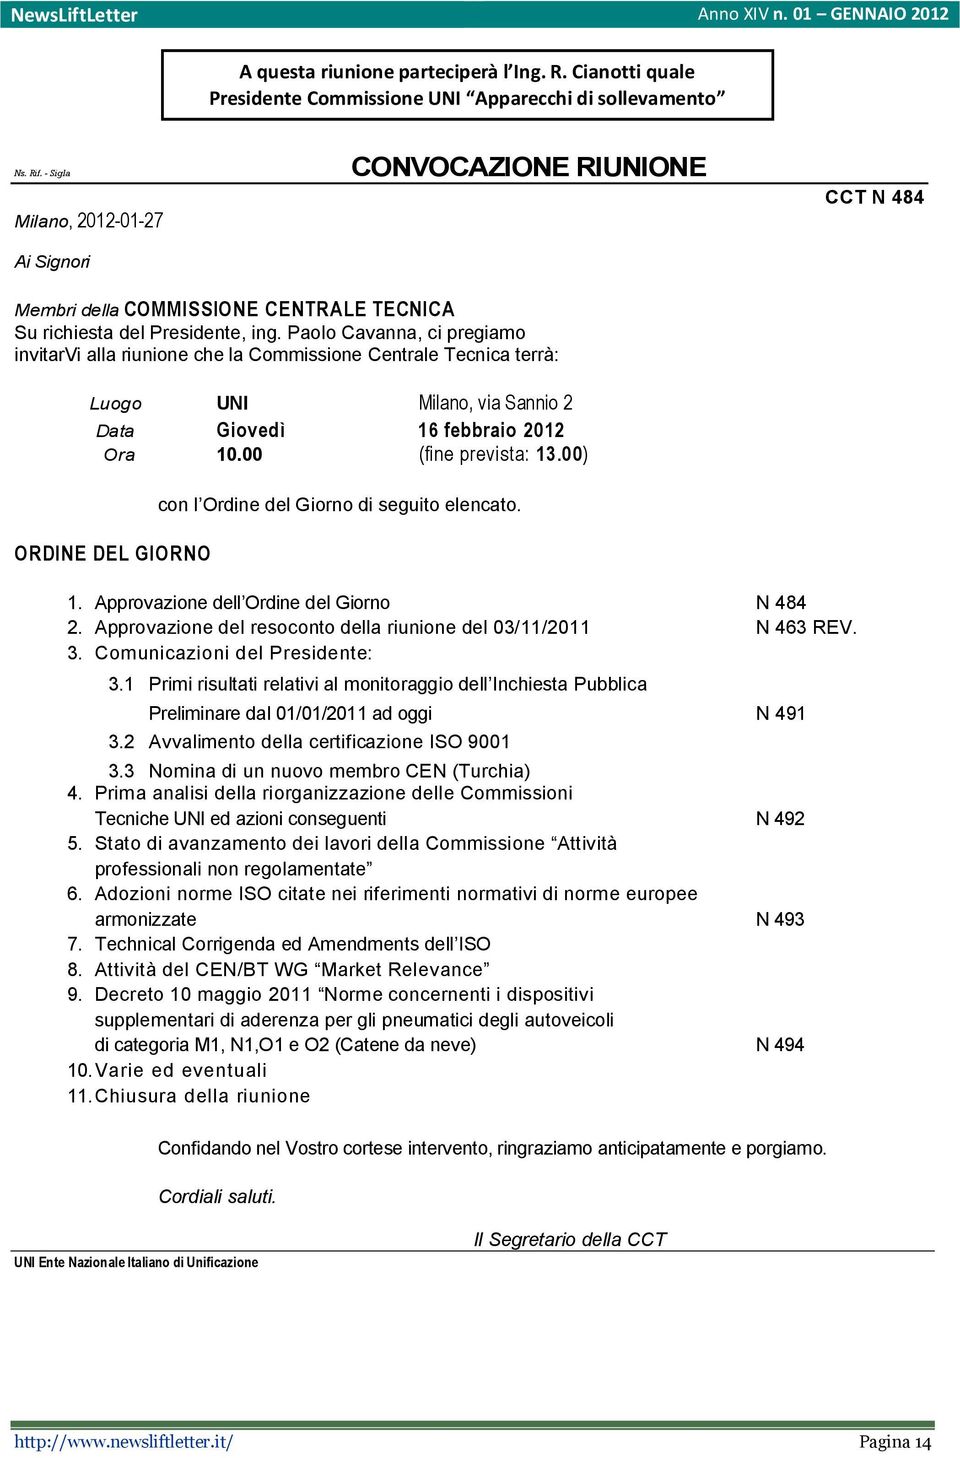 Paolo Cavanna, ci pregiamo invitarvi alla riunione che la Commissione Centrale Tecnica terrà: Luogo UNI Milano, via Sannio 2 Data Giovedì 16 febbraio 2012 Ora 10.00 (fine prevista: 13.